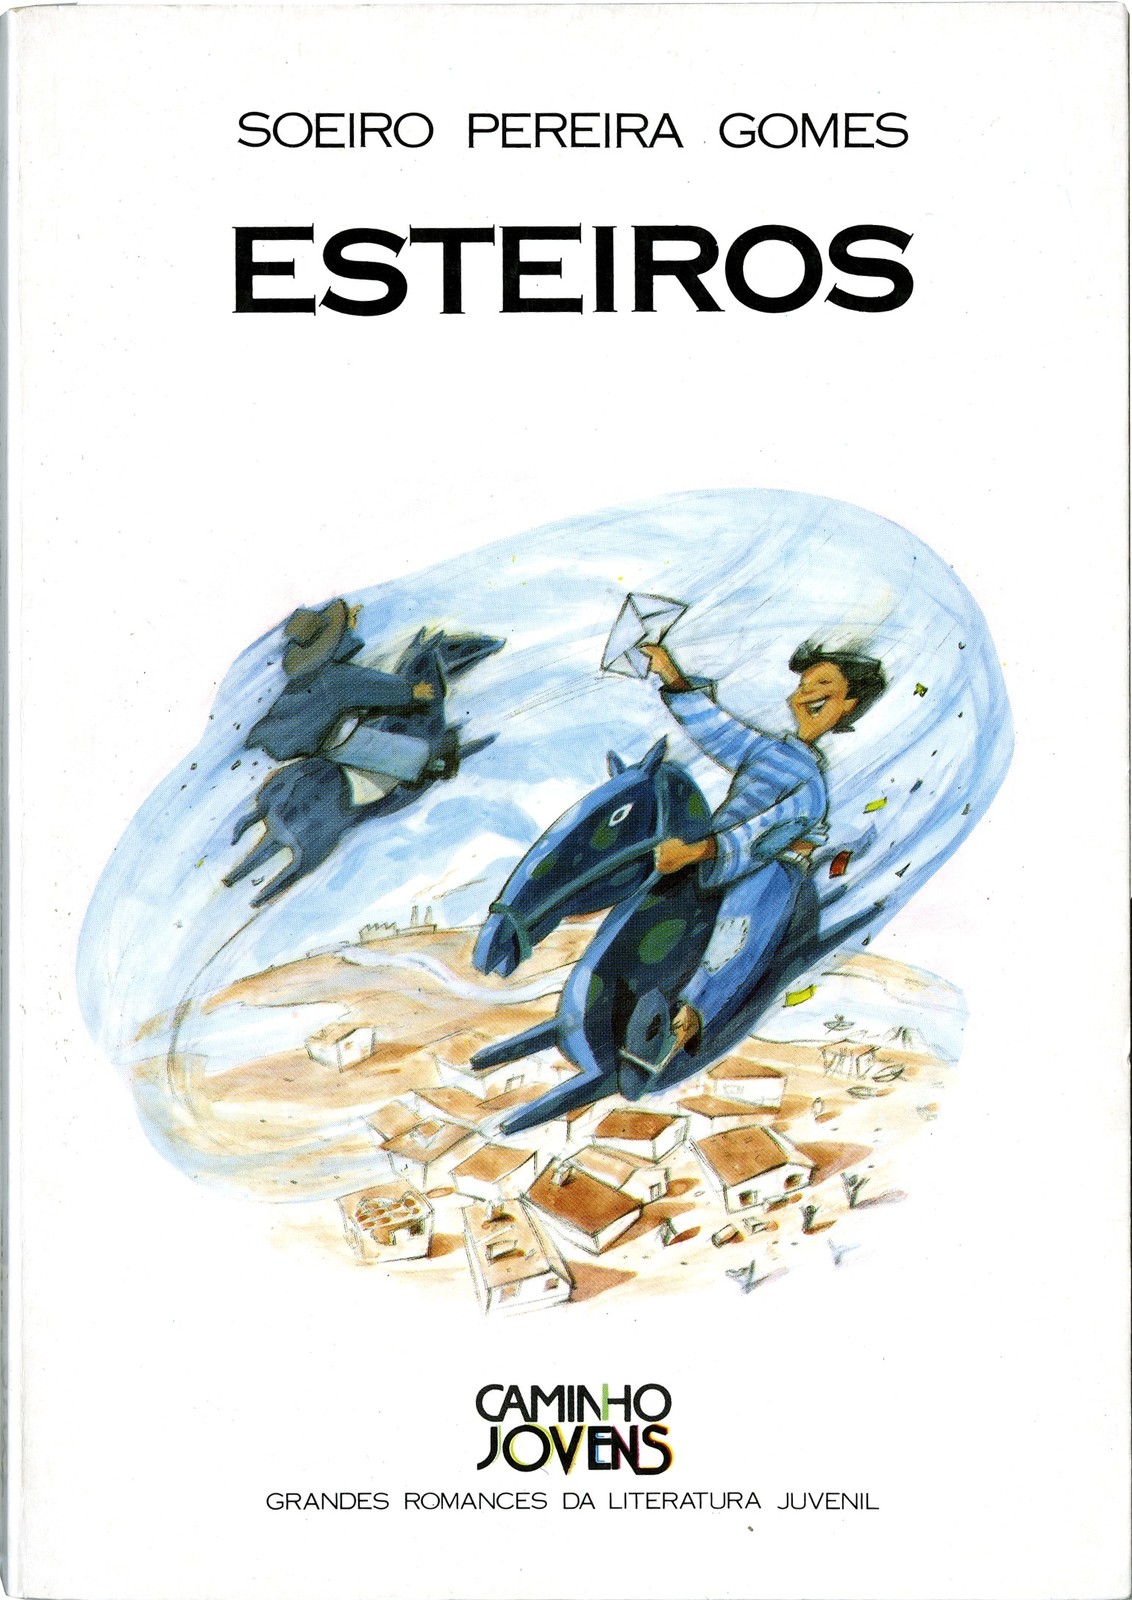 'Esteiros', por Soeiro Pereira Gomes, Lisboa: Caminho, 1993 (Caminho jovens; 26).